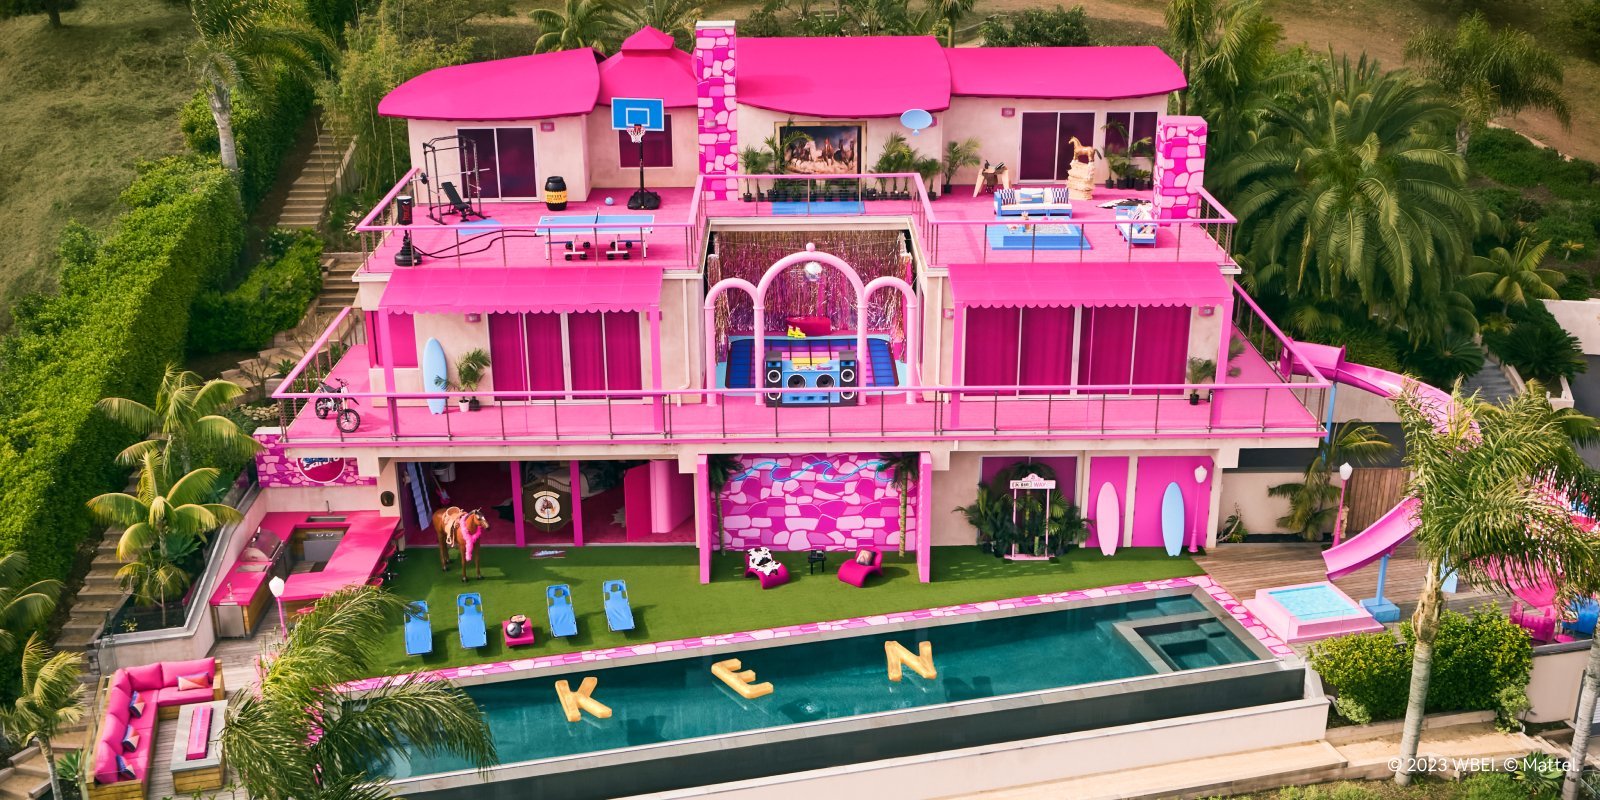 《芭比》粉色房子7月17日變成民宿 粉絲繪製《奧本海默》跨界圖